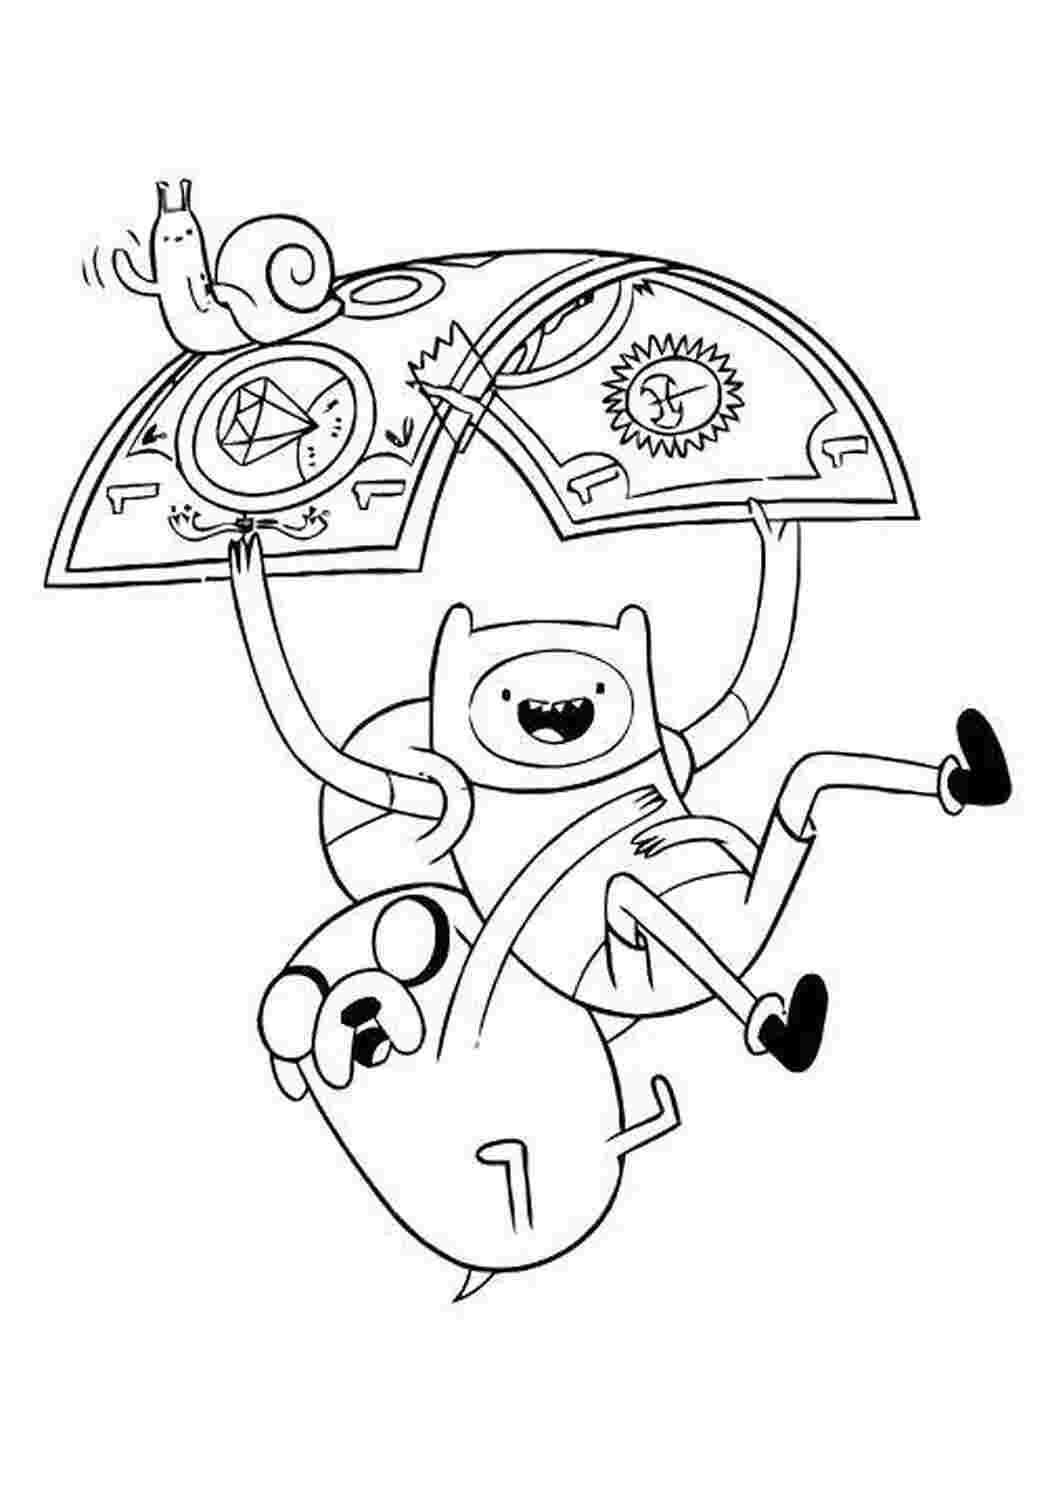 Раскраска Adventure Time: Приключения справа и слева